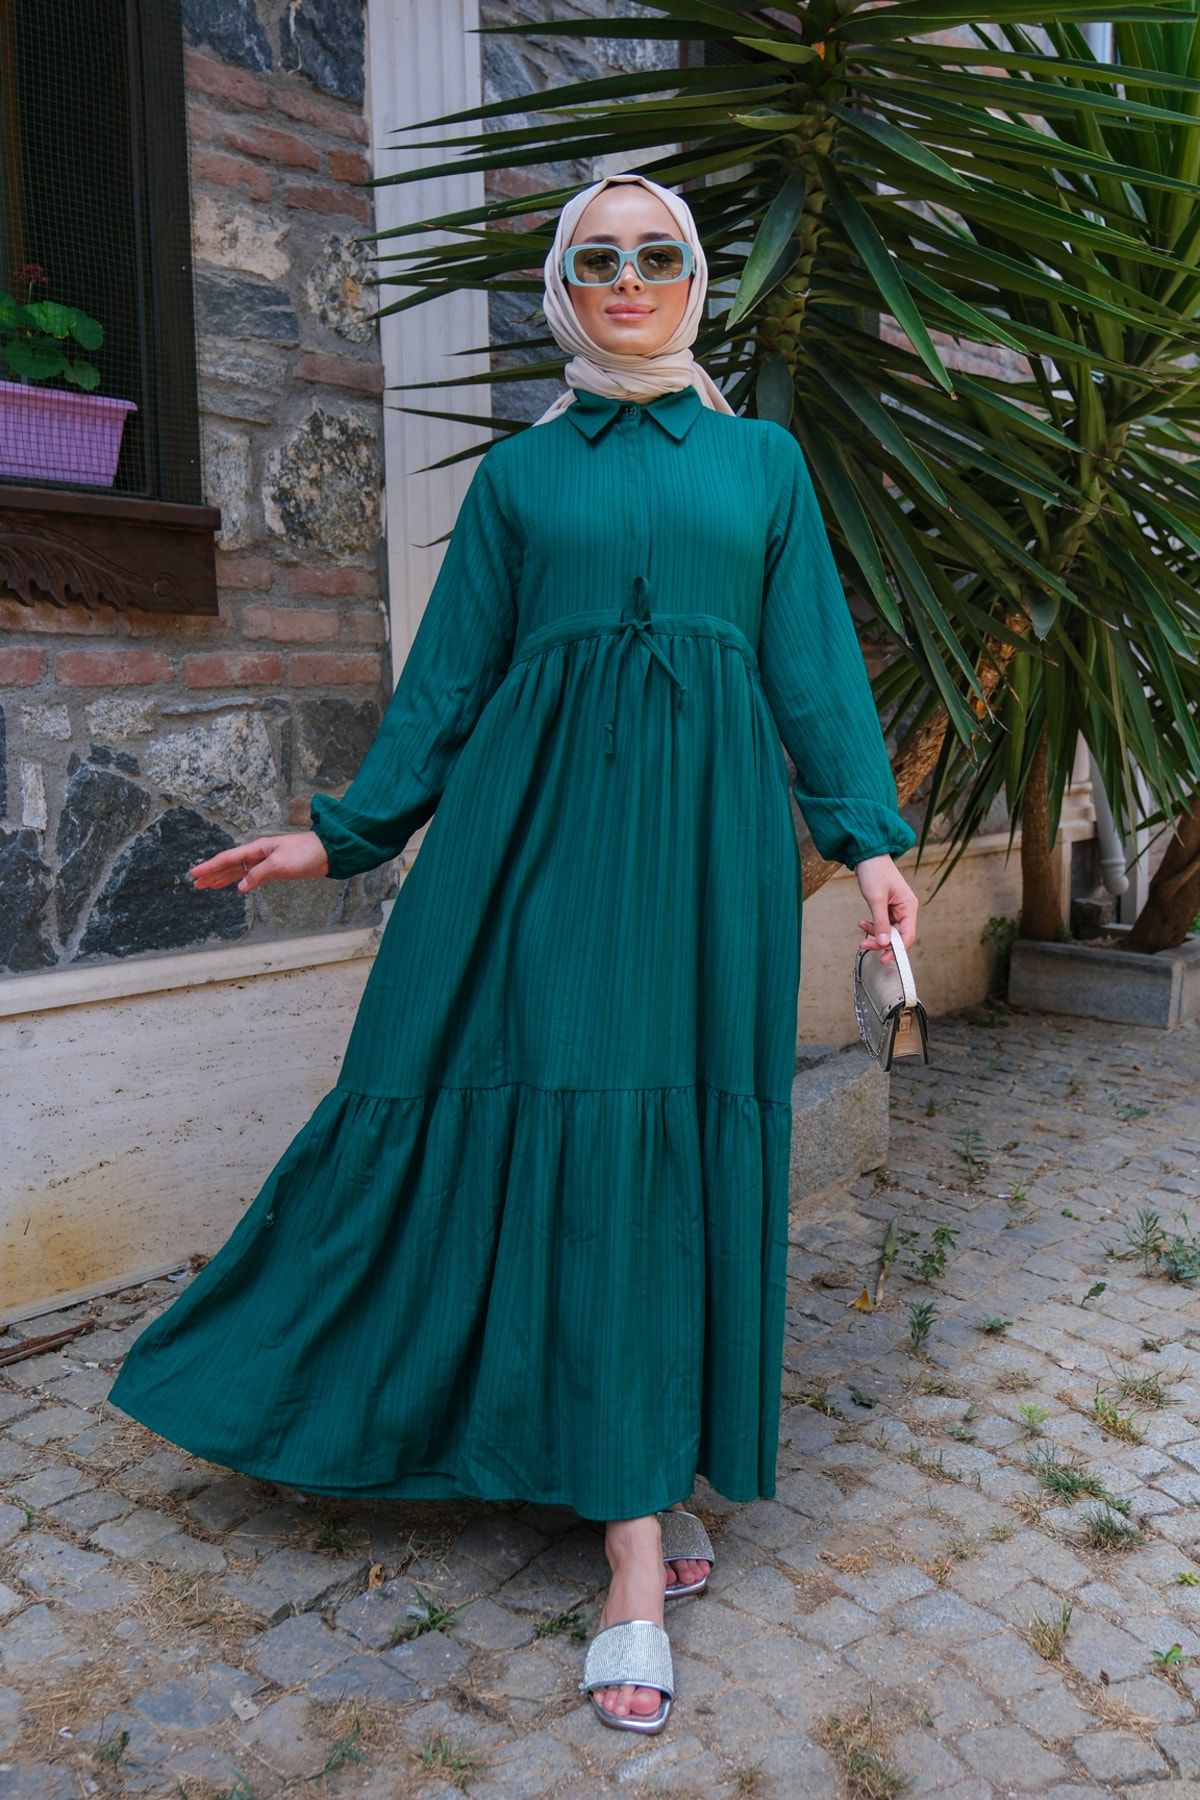 LOCCO Kadın Bel Büzgülü Tesettür Elbise Zümrüt Yeşil